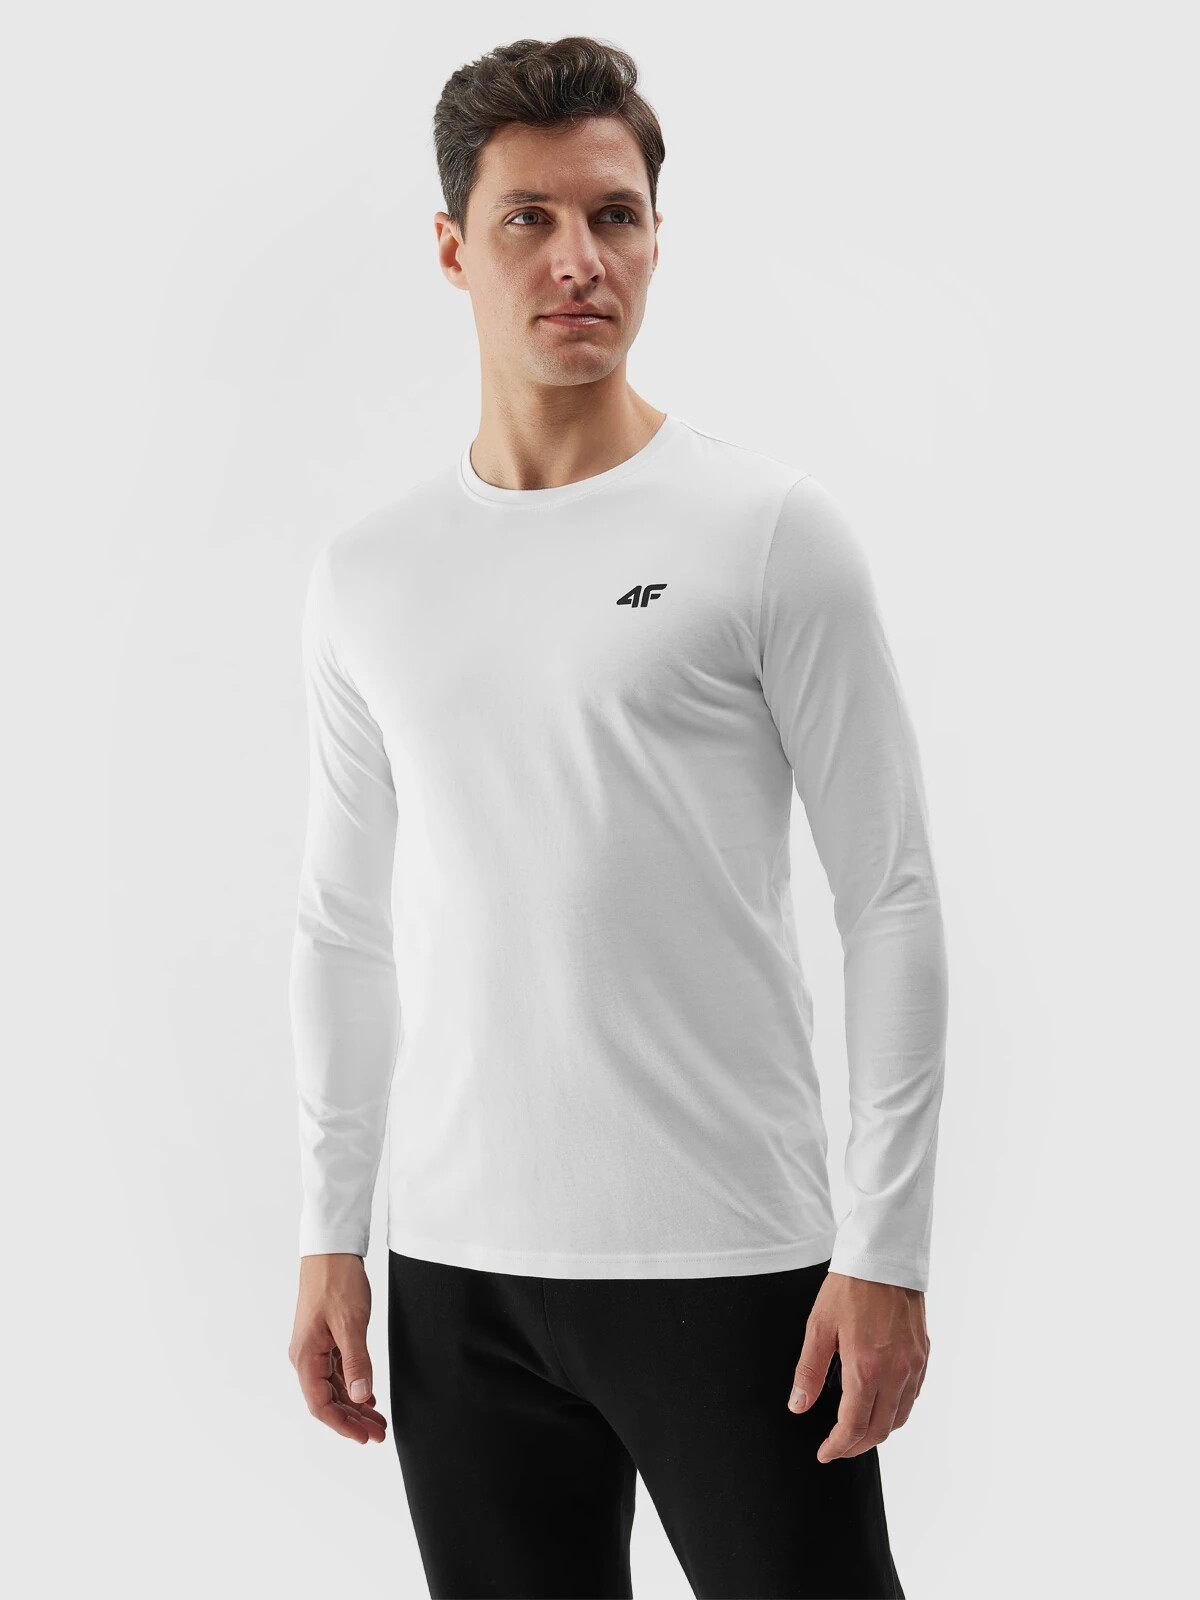 Men's Plain Long Sleeves T-Shirt 4F - White